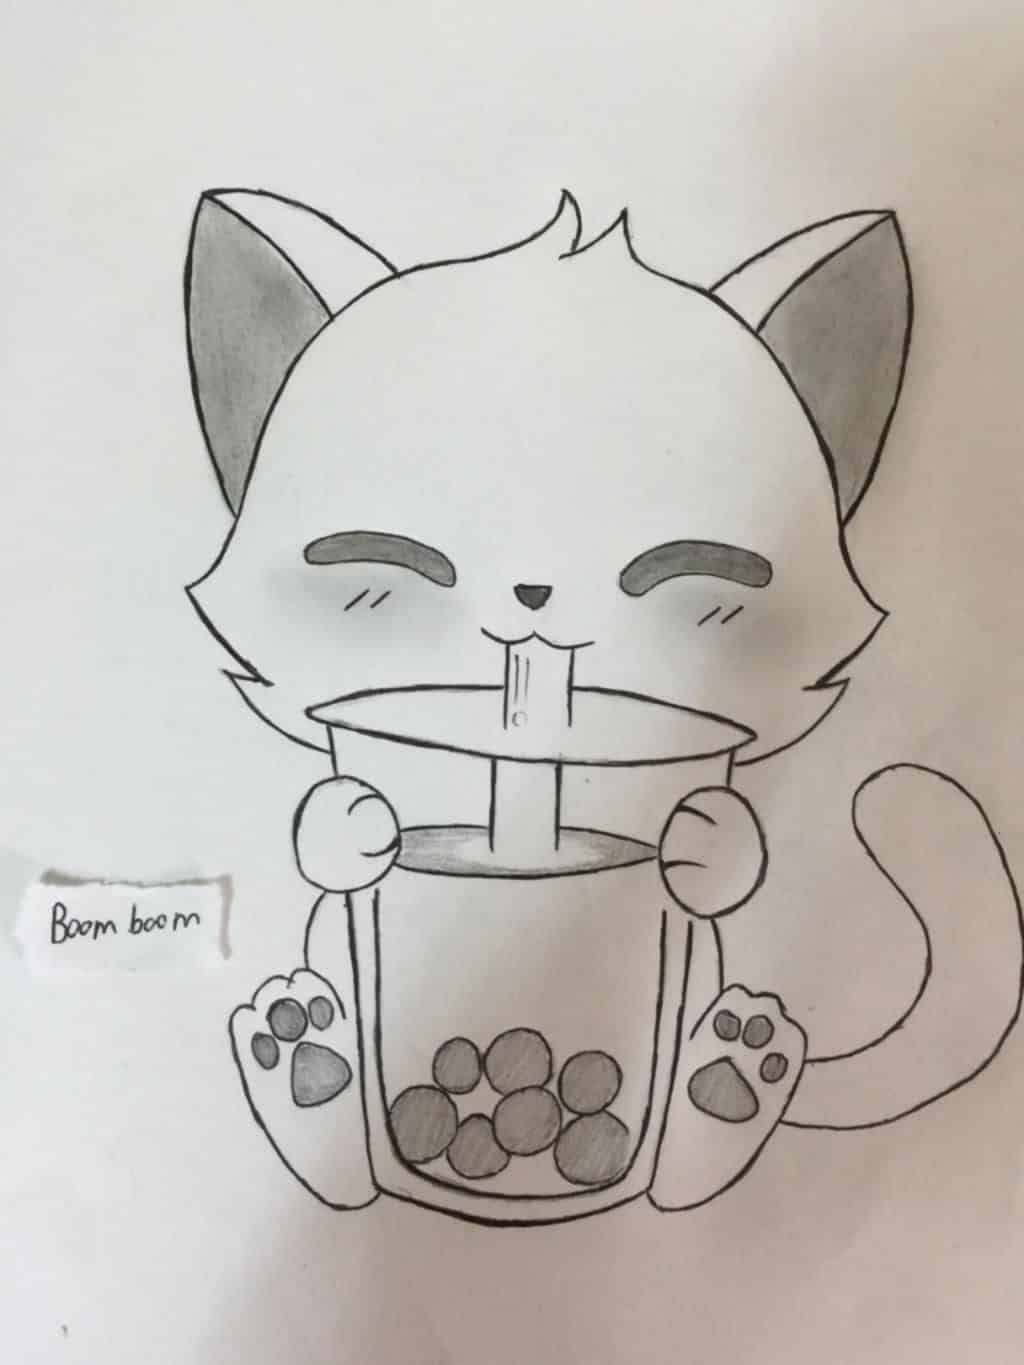 Cách vẽ con mèo I Vẽ con mèo  How to draw a Cat  YouTube